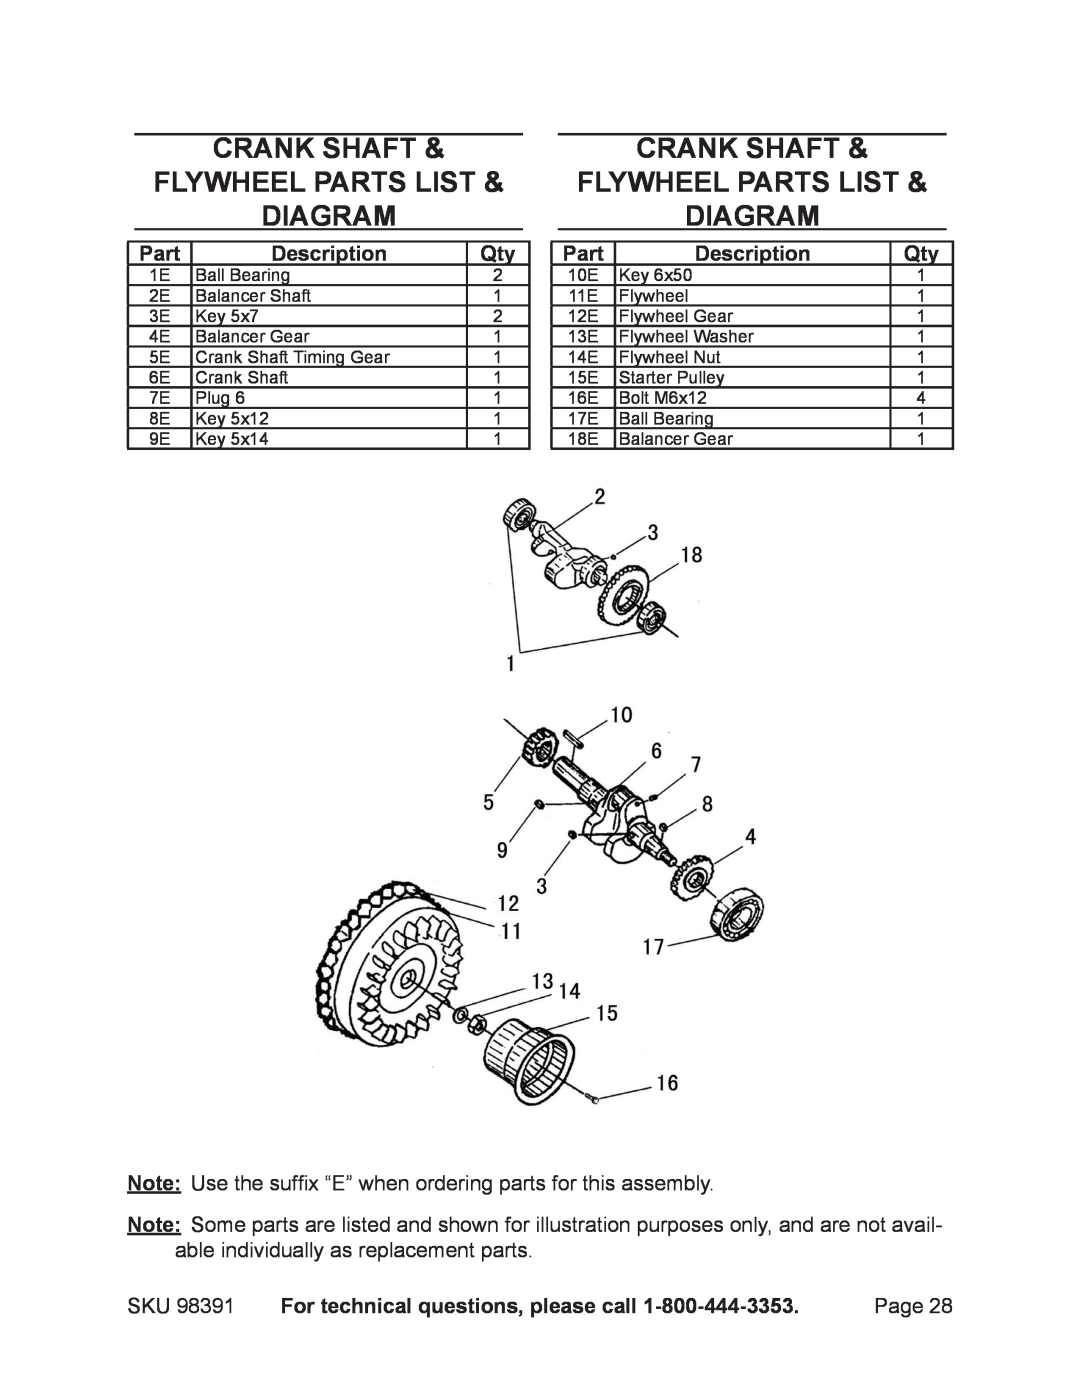 Chicago Electric 98391 Crank shaft flywheel PARTS LIST diagram, Part, Description, For technical questions, please call 